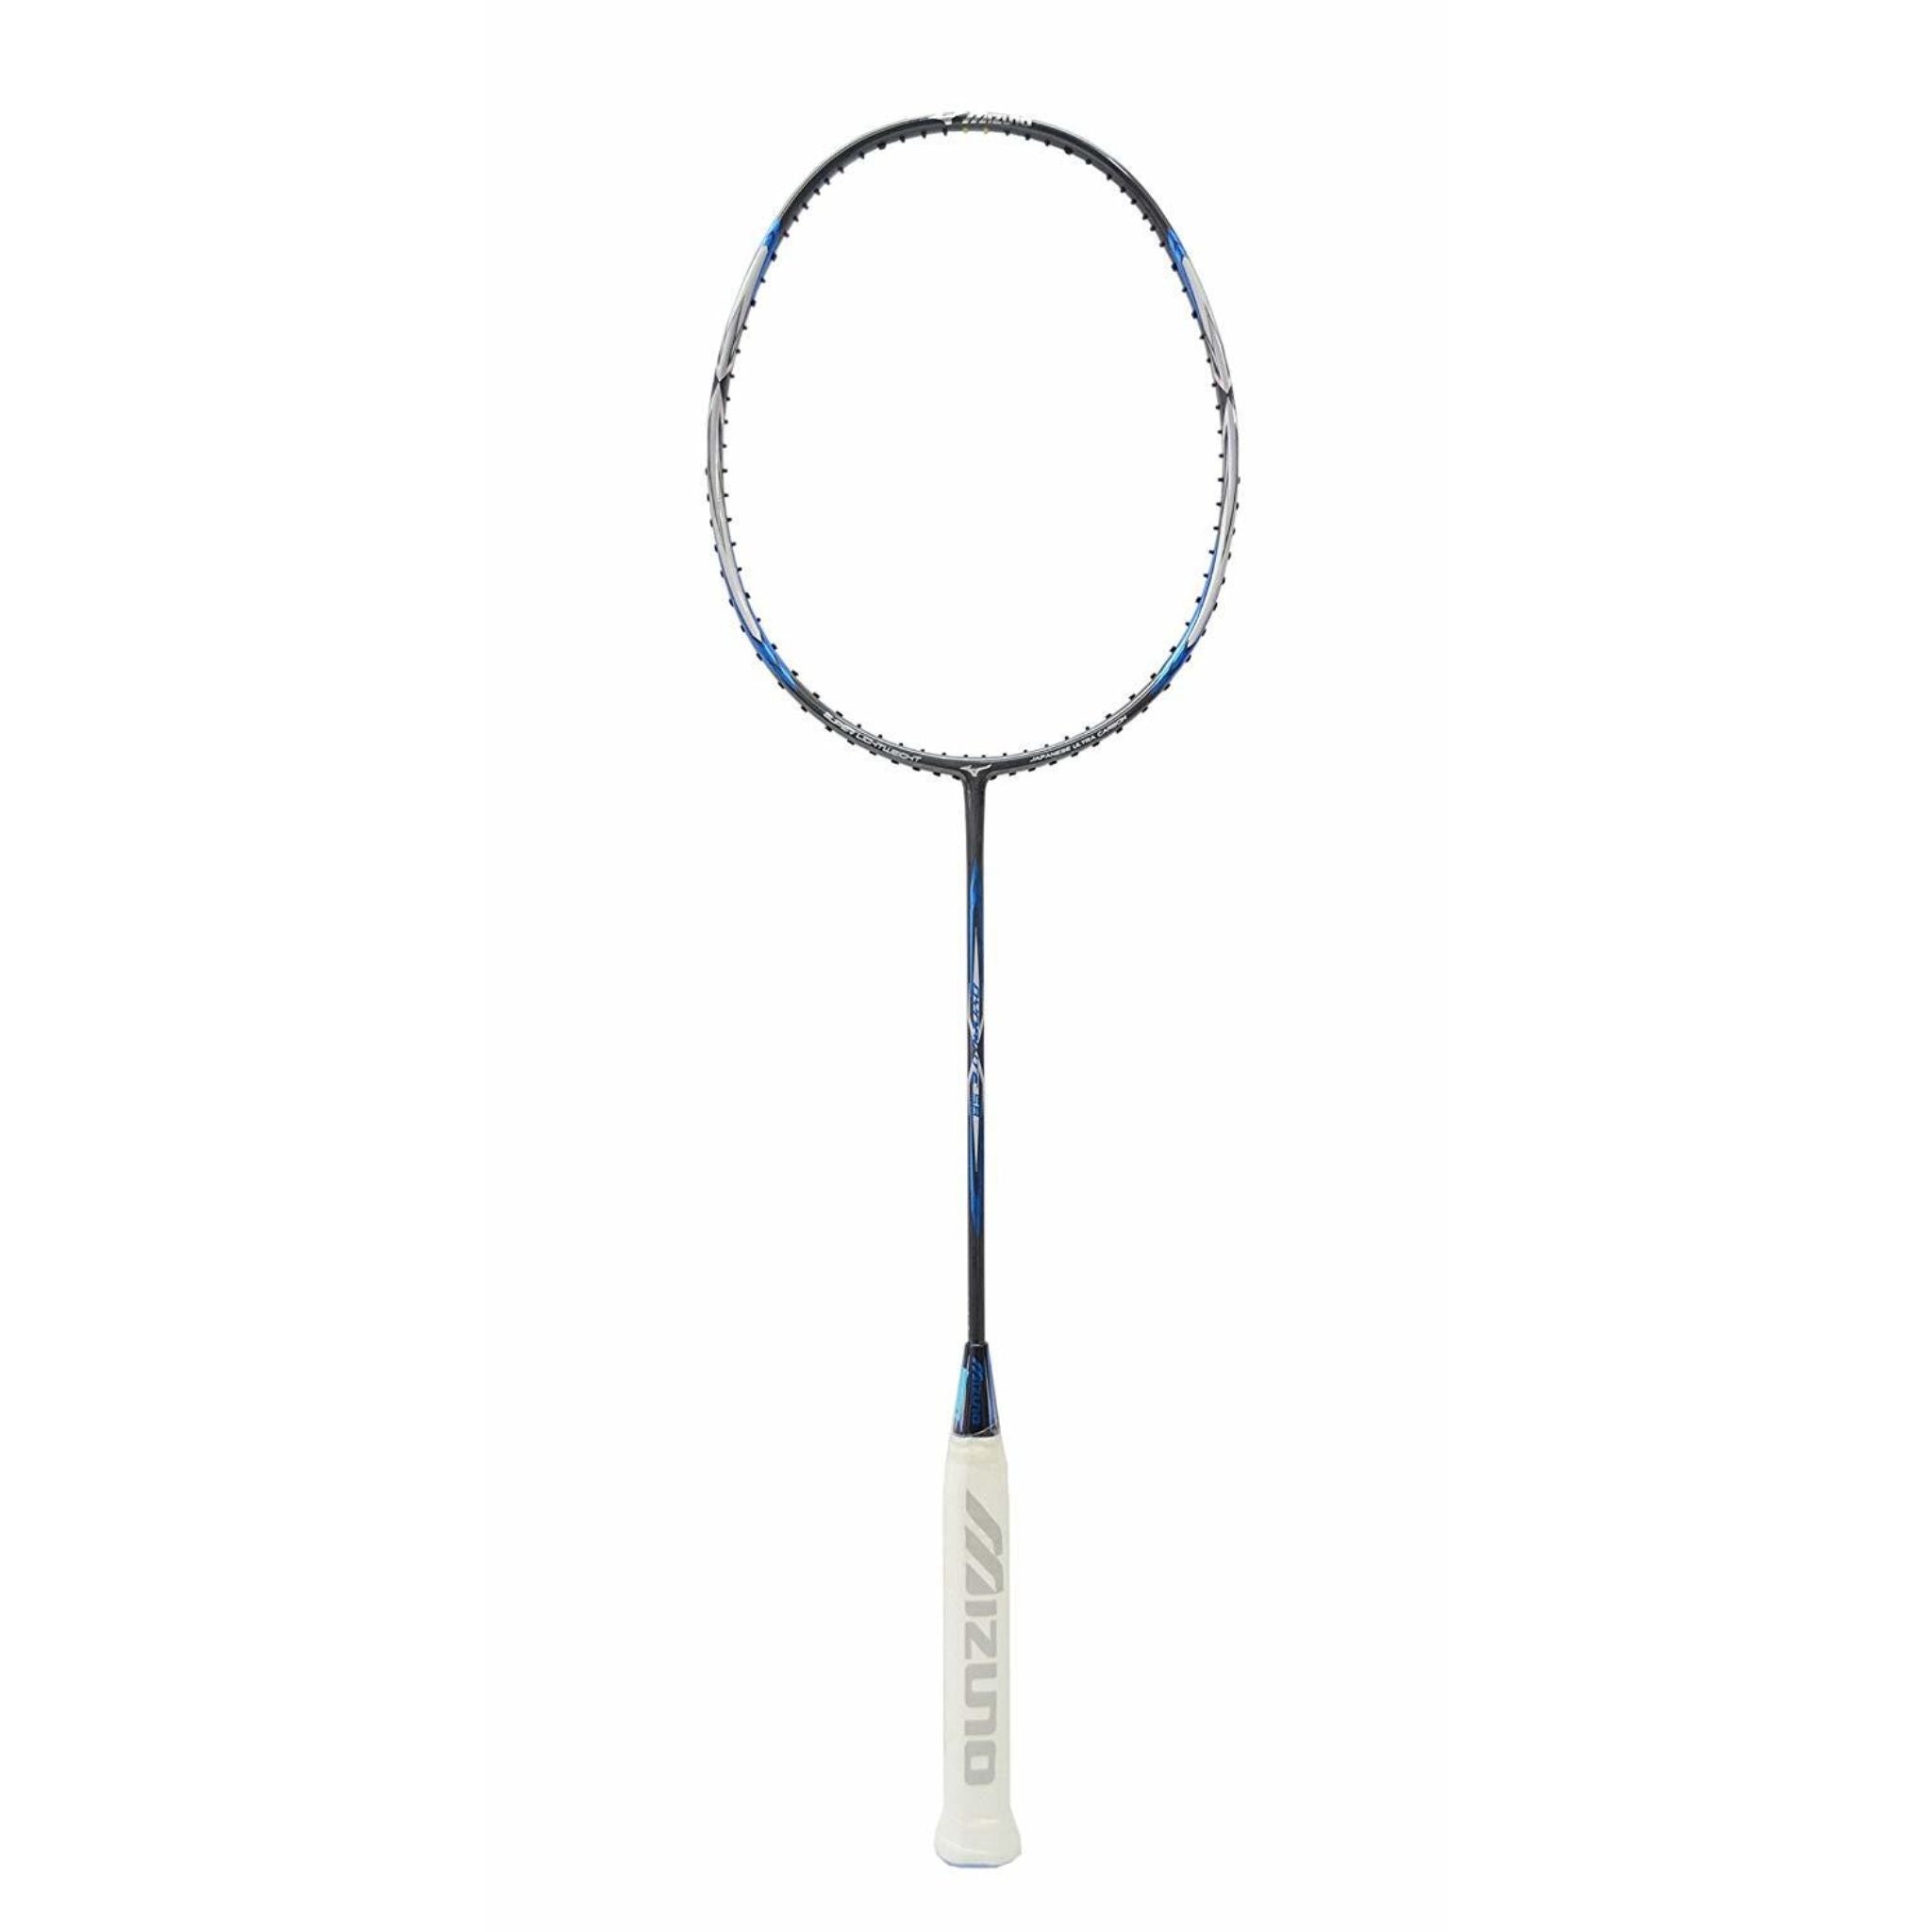 Mizuno Dynalite 58 Badminton Racket